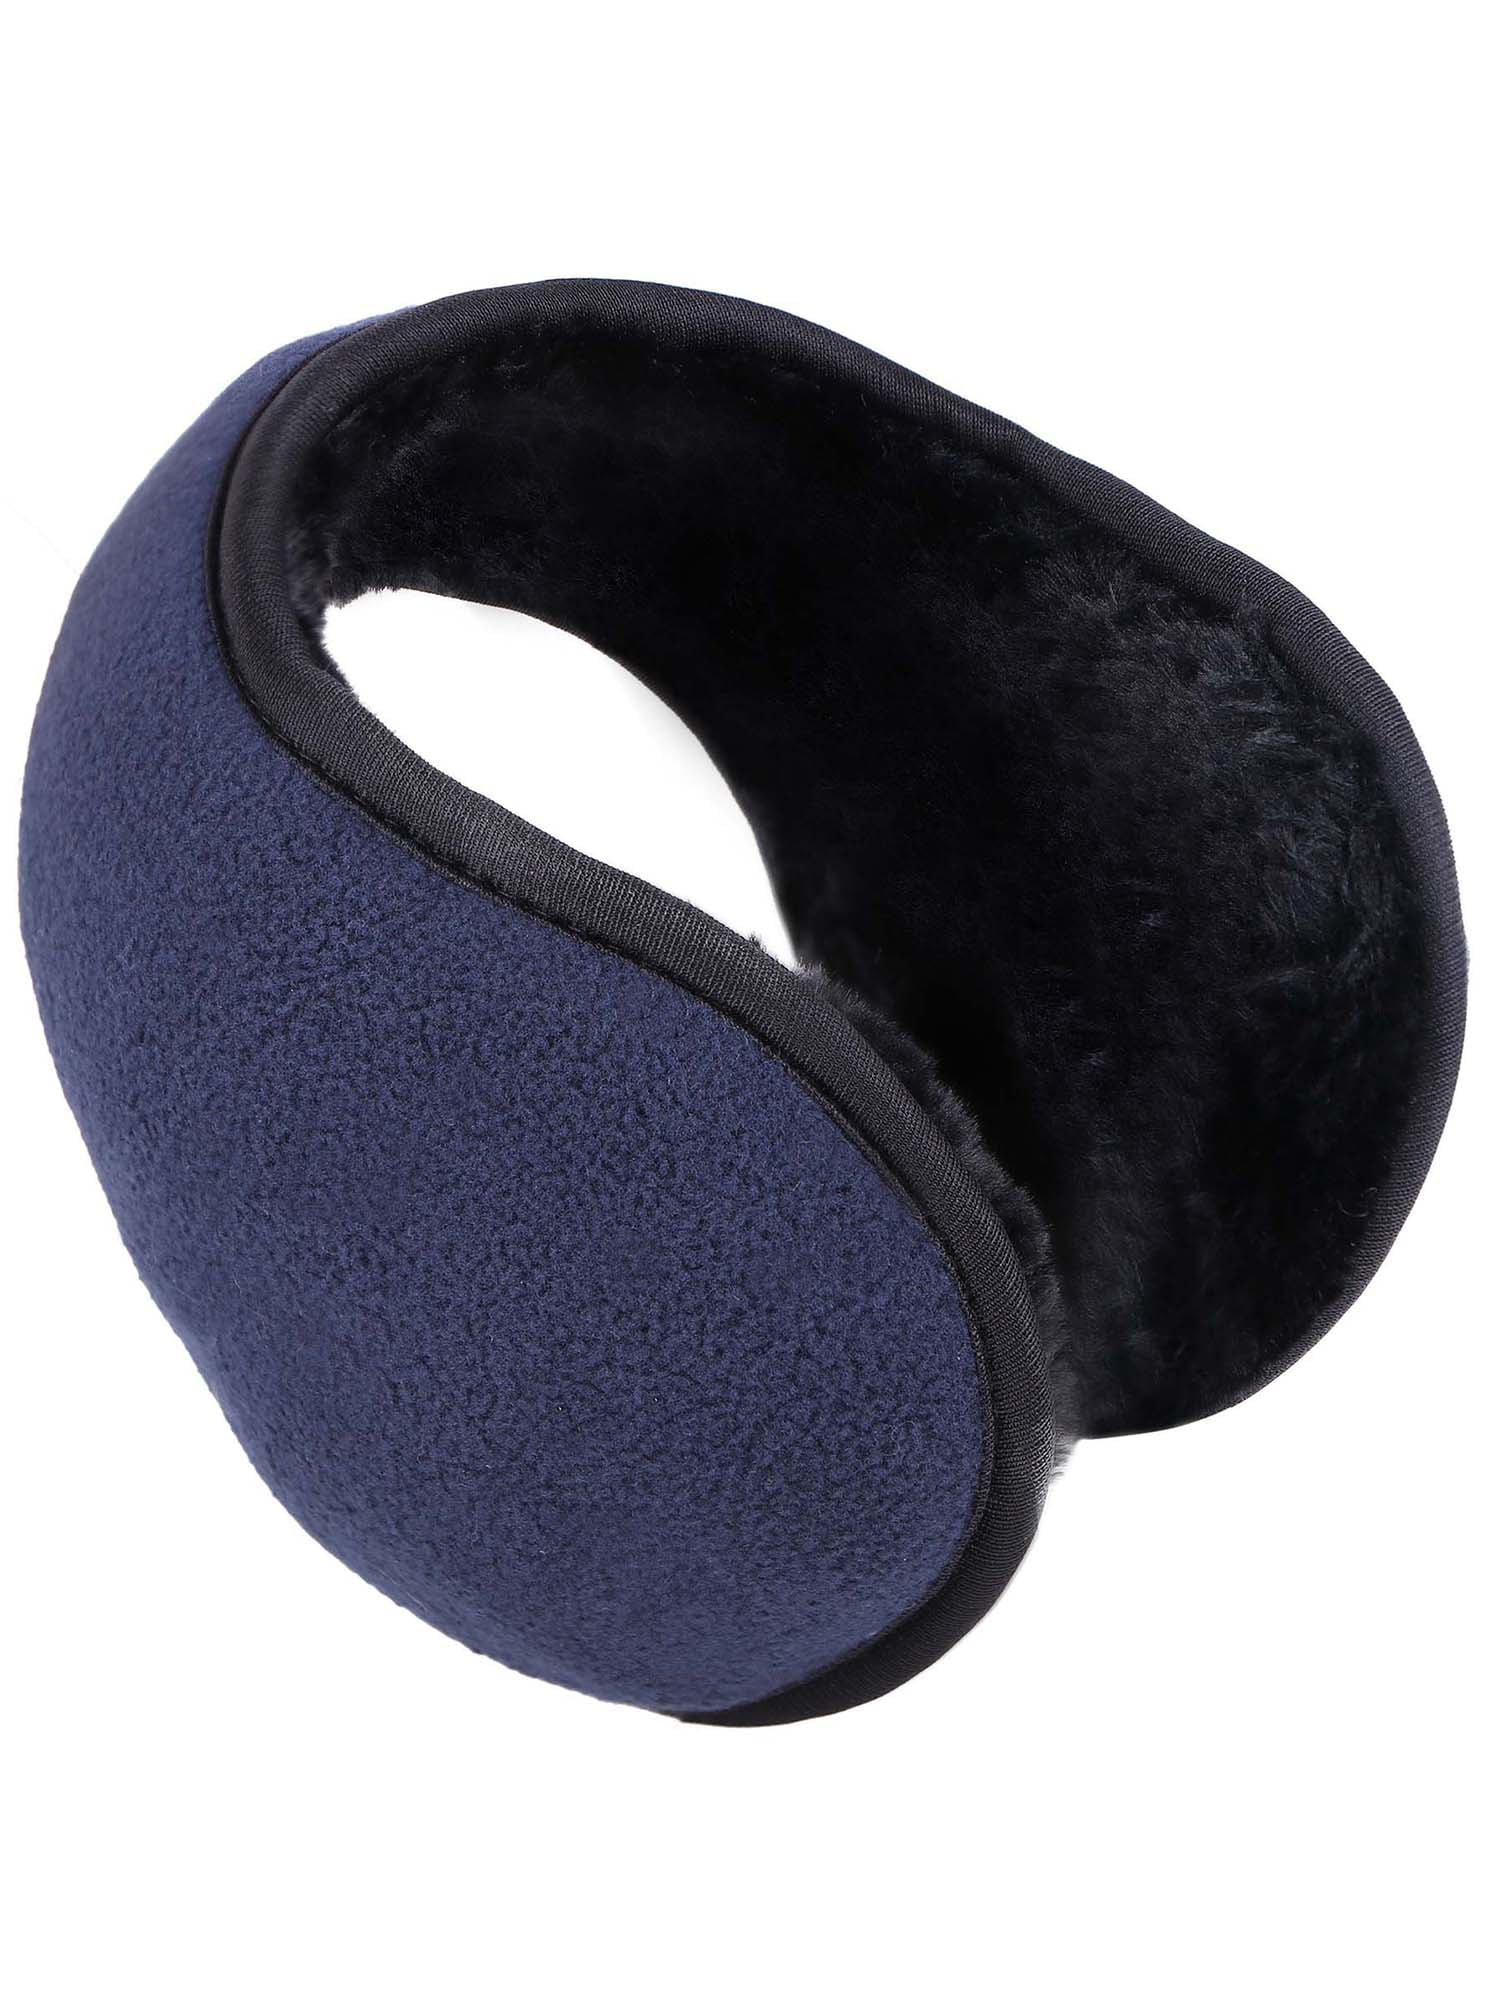 Allegra K Cycling Headwear Dark Blue Fleece Ear Warmers Earmuffs 